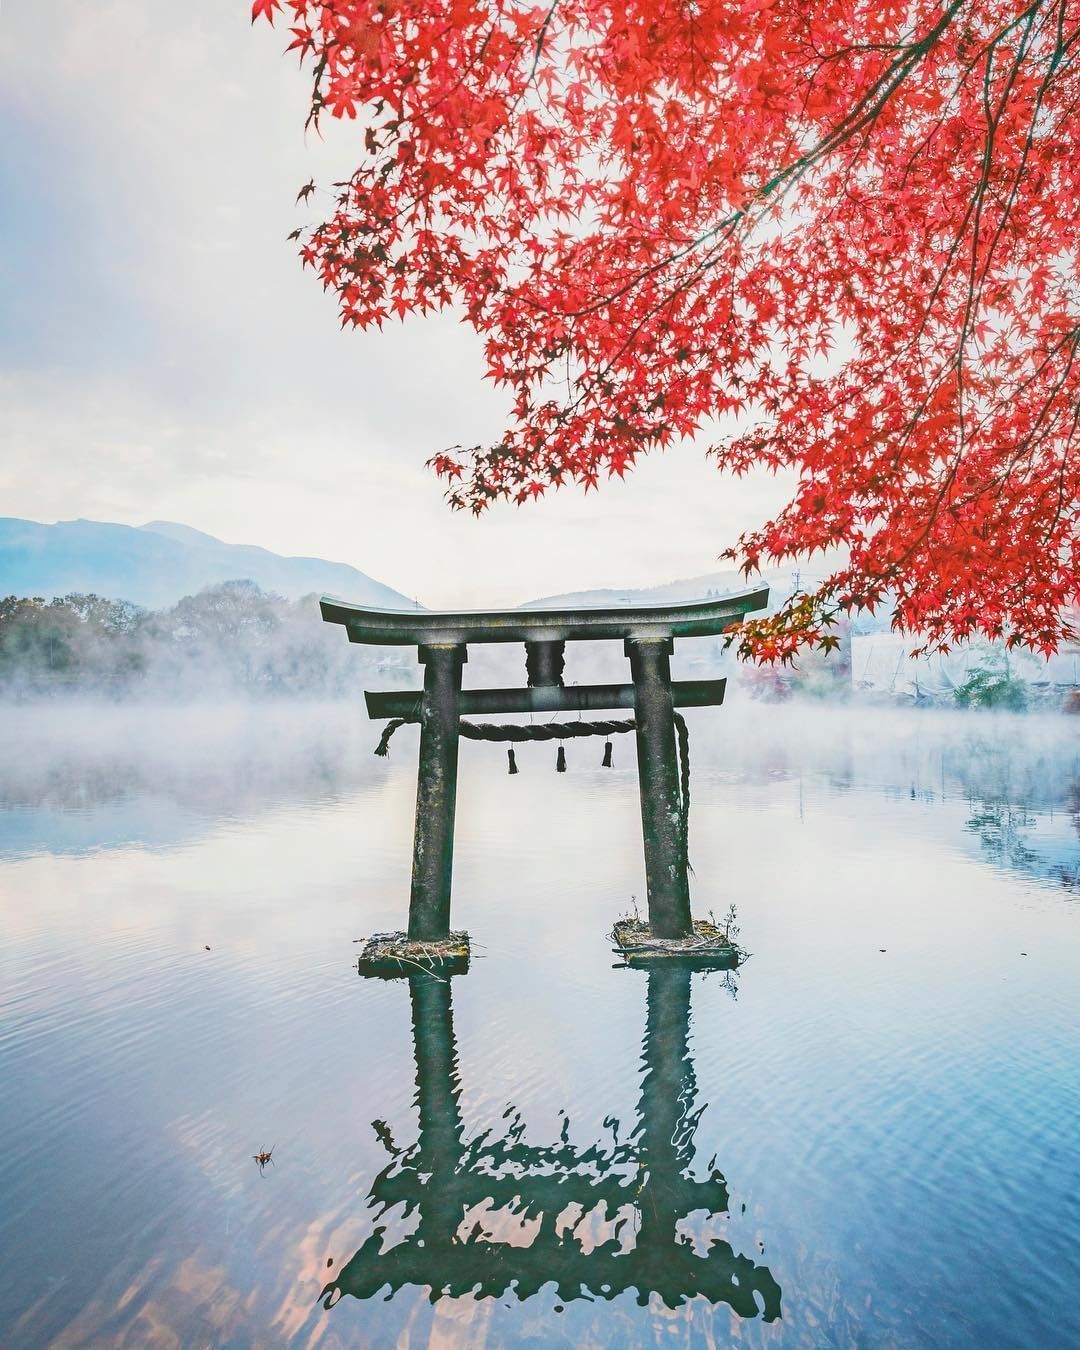 ¿Puedes creer lo que ven tus ojos? ⛩️😯La Puerta Torii del Templo Bussanji, que descansa sobre el lago Kinrin en la prefectura de Oita, parece flotar suavemente en la niebla matutina de otoño e invierno (alrededor de septiembre a febrero).Estas brumas matutinas añaden una atmósfera mítica a la belleza tradicional de las hojas rojas de arce.¡Que espectacular vista!¿Qué sitio de Japón te gustaría visitar?Feliz viaje de autodescubrimiento y despertar.Gracias, Gracias, Gracias, Gassho, @dinopierini#reikivenezuela #reikizulia #reikimaracaibo #japon #sabiduriajaponesa